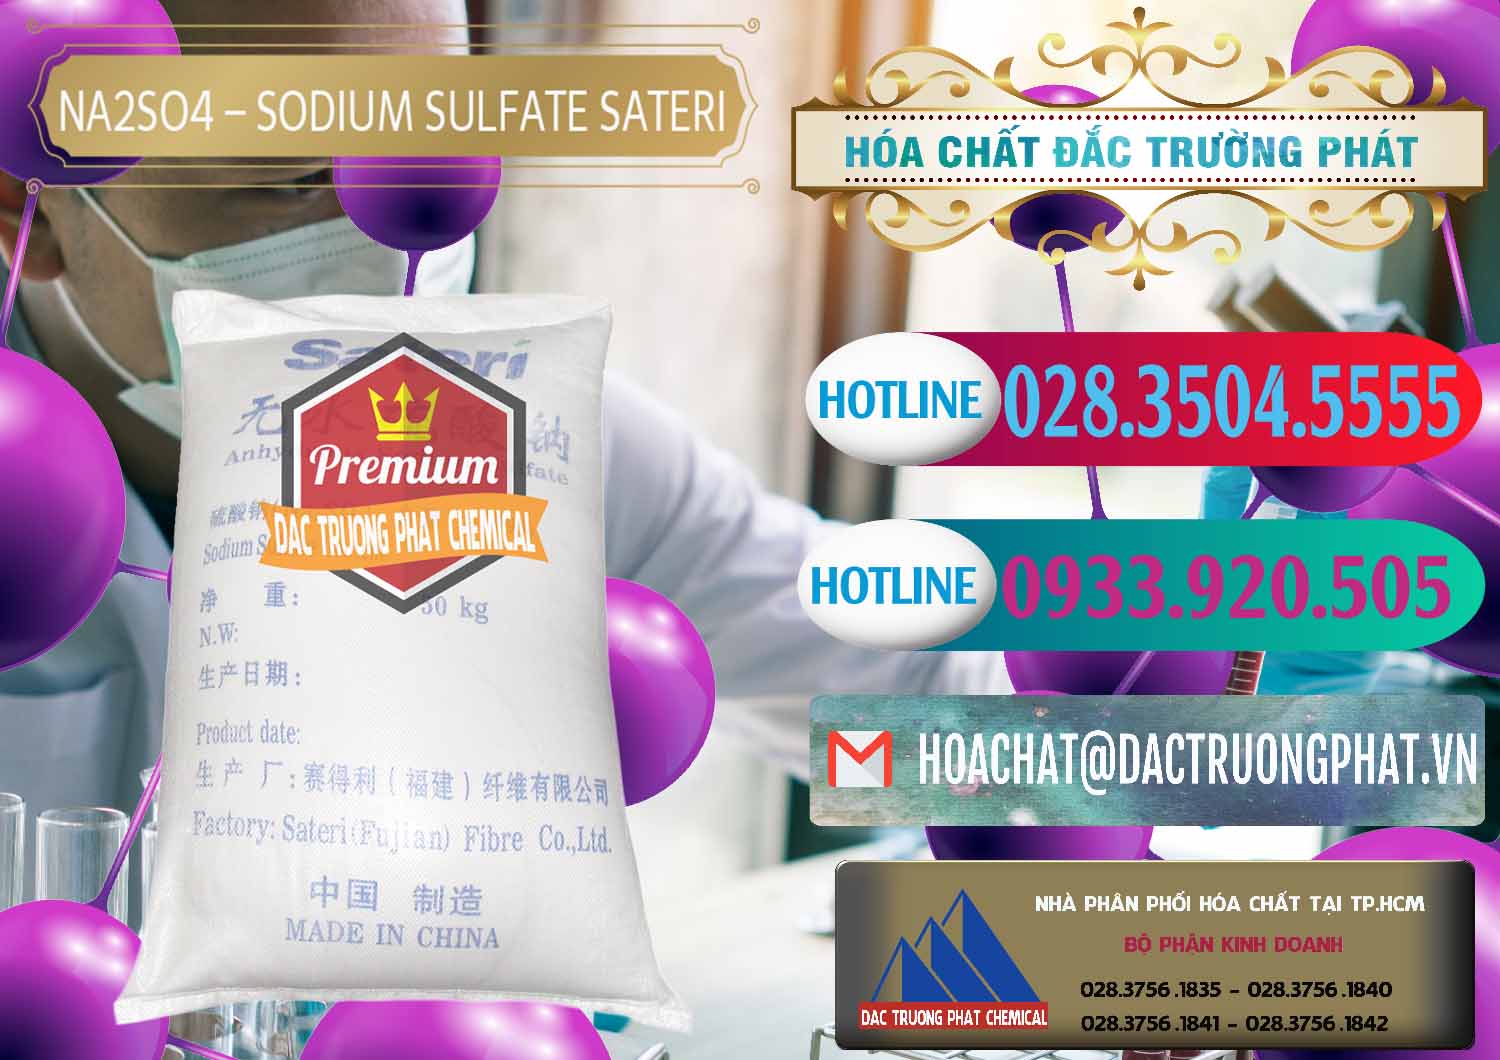 Cty chuyên kinh doanh & bán Sodium Sulphate - Muối Sunfat Na2SO4 Sateri Trung Quốc China - 0100 - Công ty chuyên cung cấp và kinh doanh hóa chất tại TP.HCM - truongphat.vn